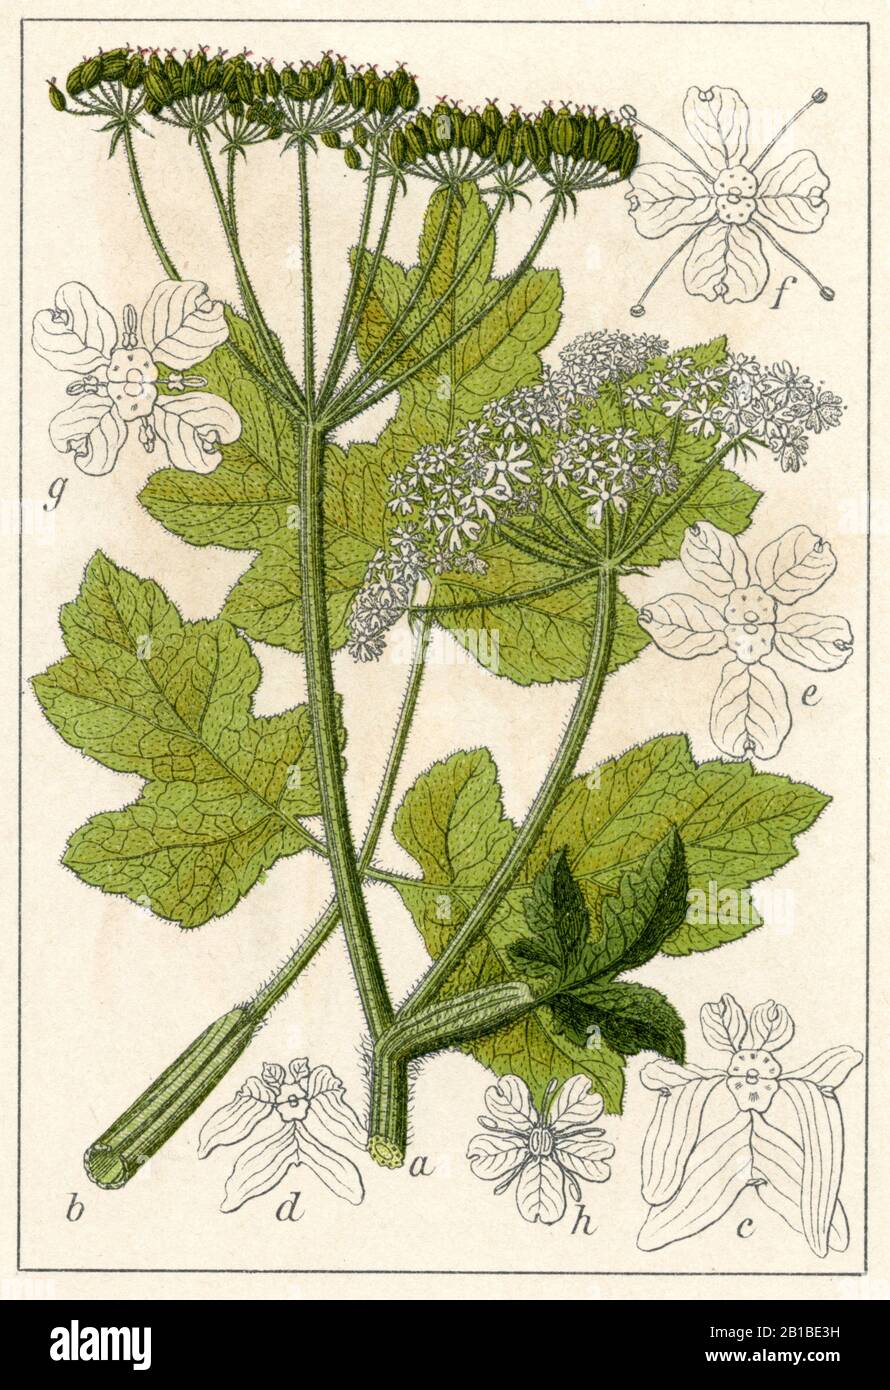 hogweed, Heracleum sphondylium, Wiesen-Bärenklau, Berce sphondyle,  (botany book, 1904) Stock Photo